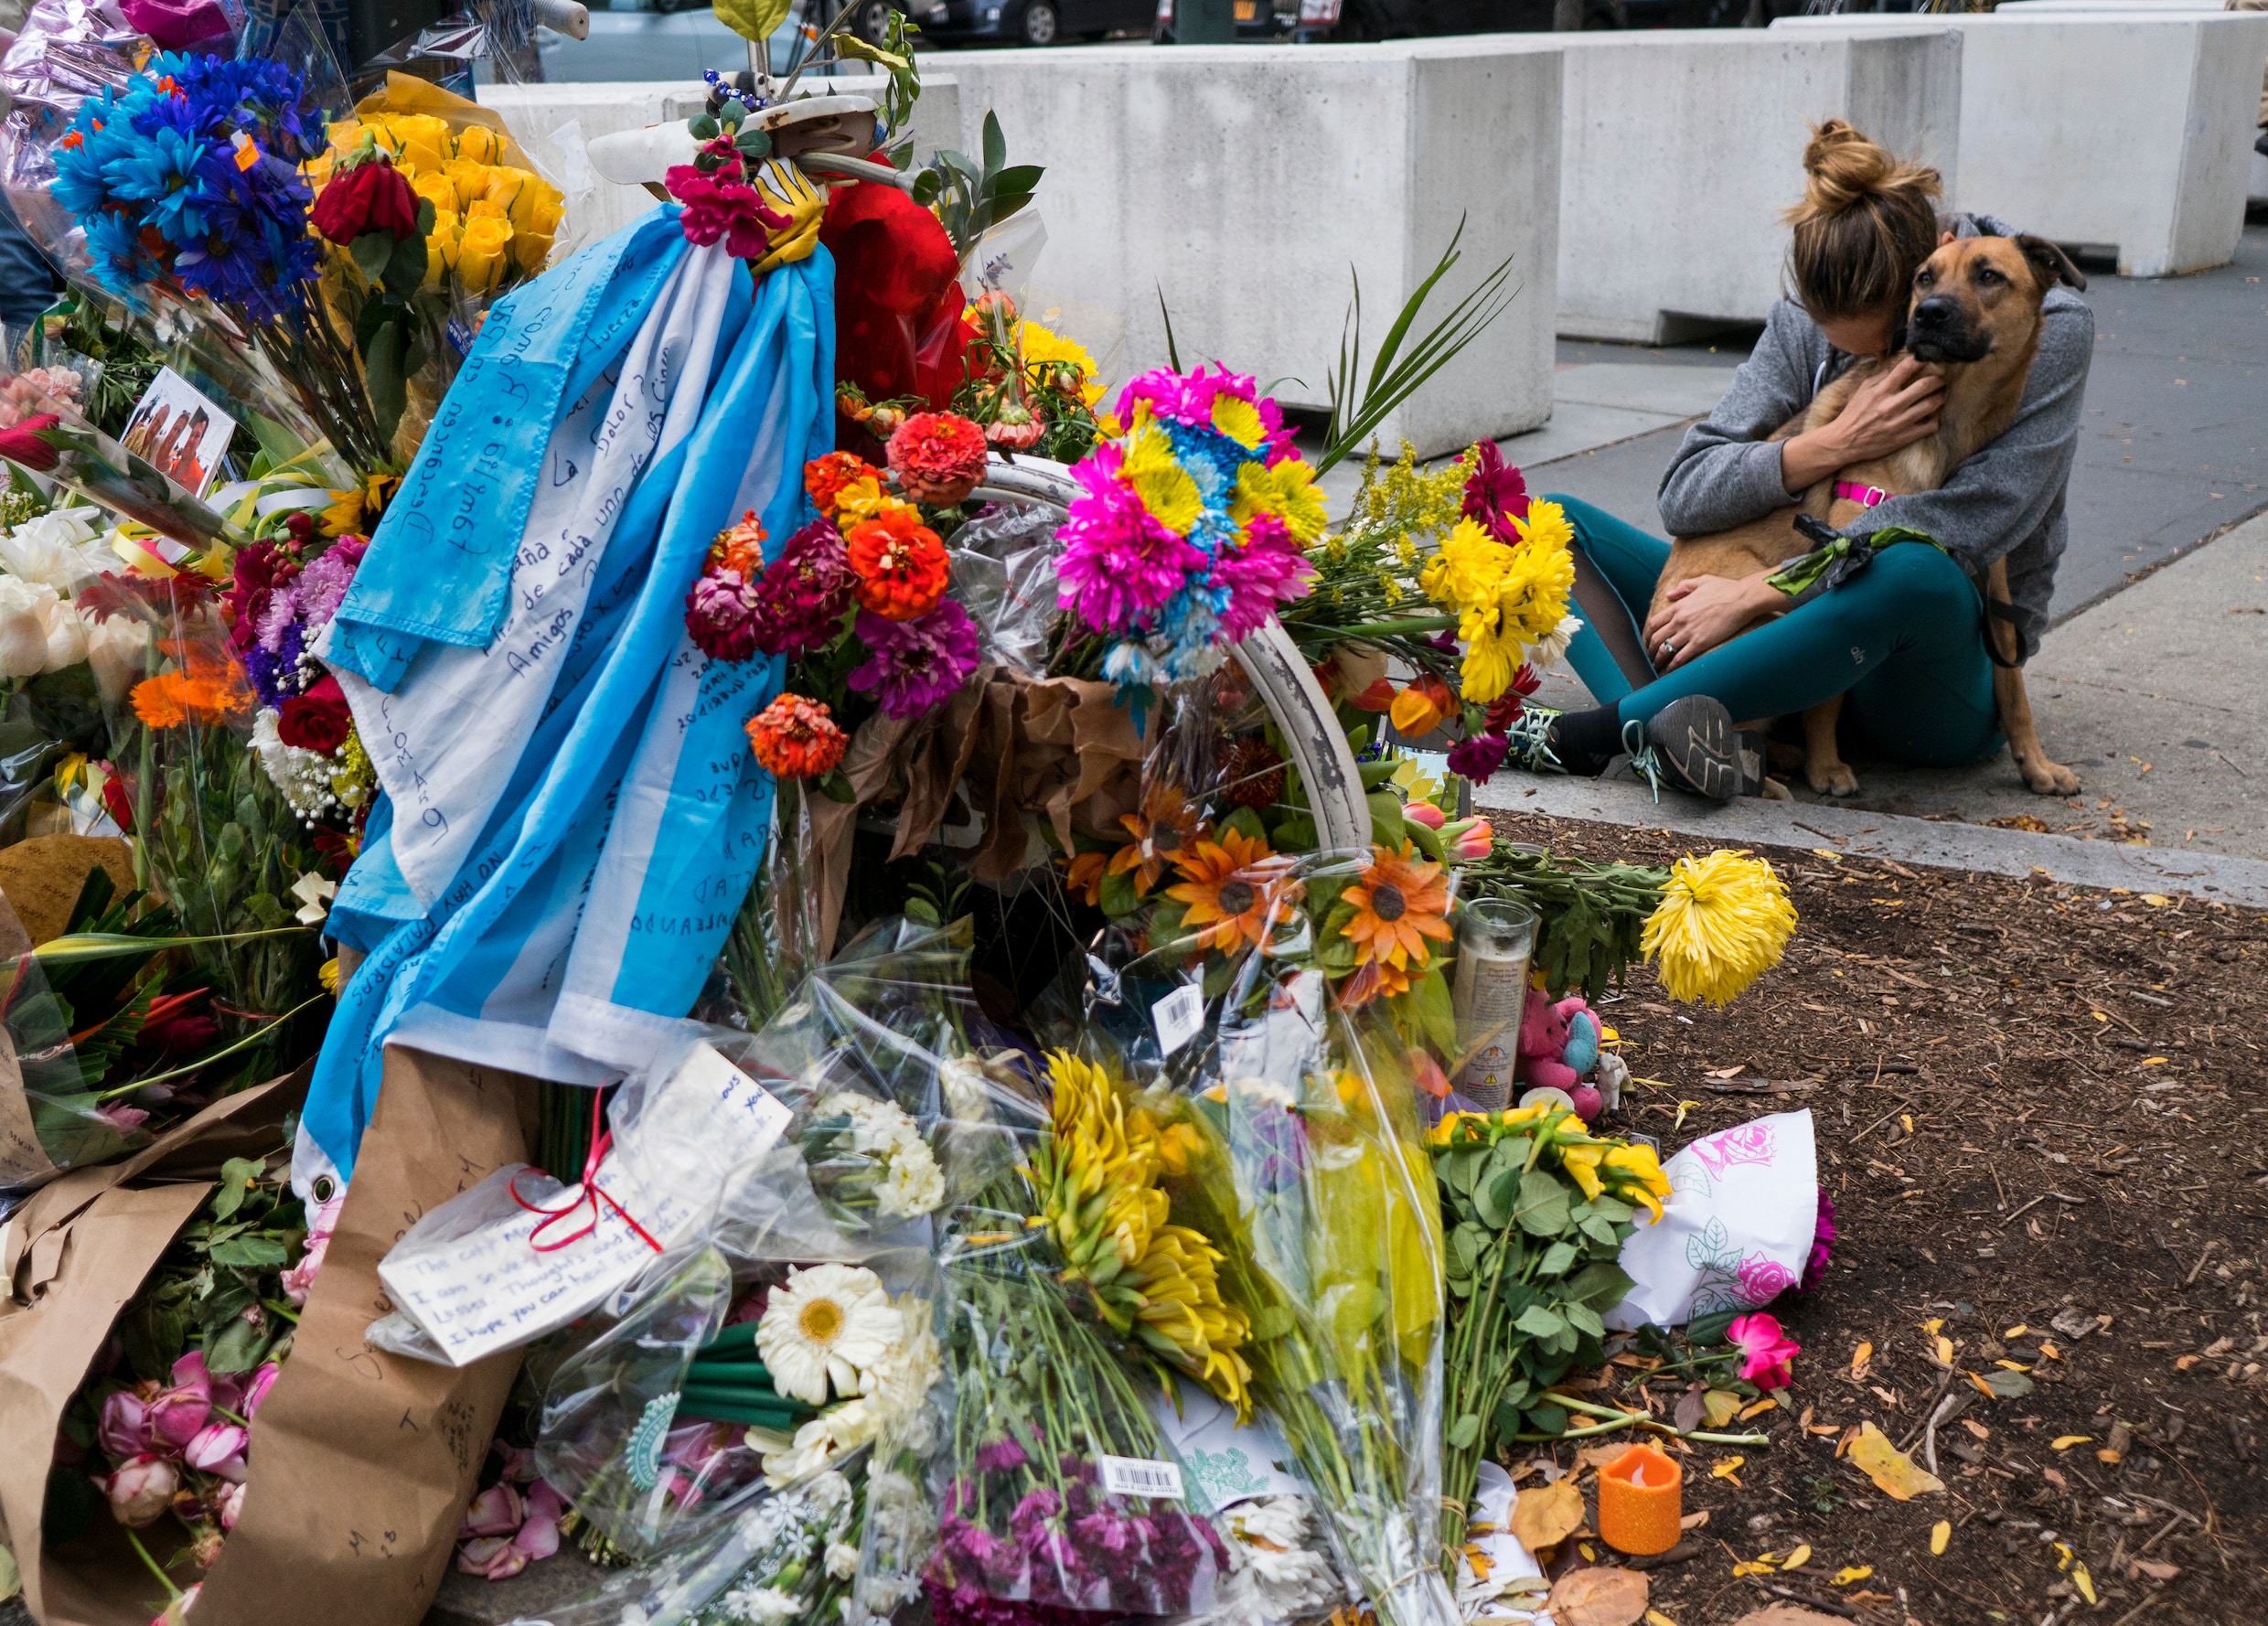 Dader van aanslag in New York waarbij ook Belgische omkwam, krijgt levenslang